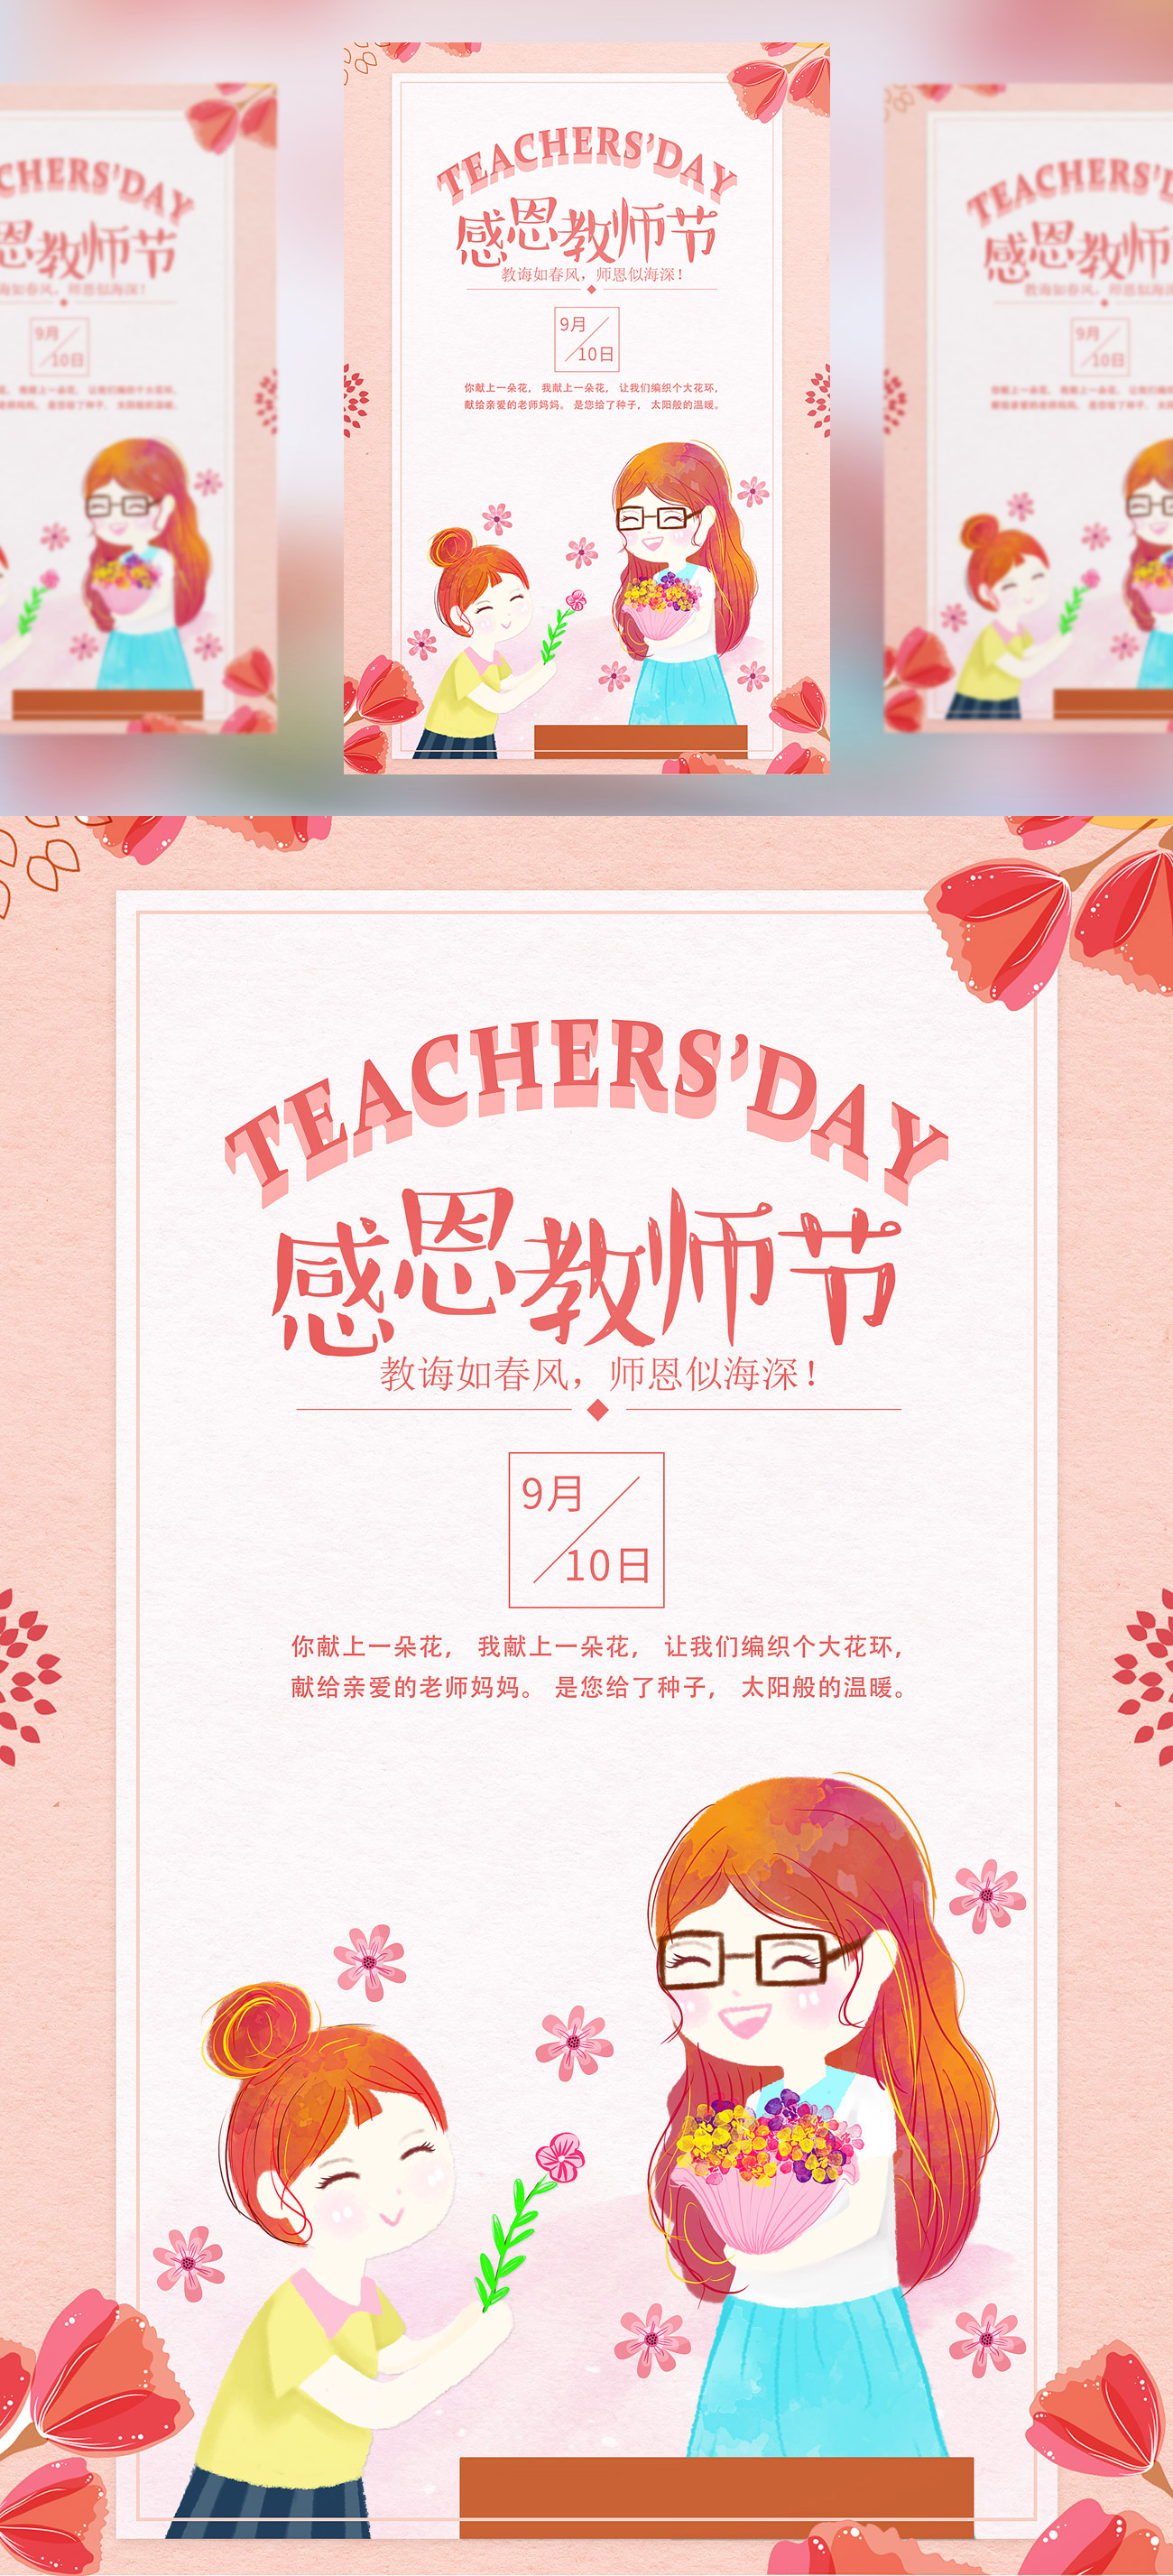 【感恩教师节】教师节海报模板/活动展板/宣传单PSD模版素材